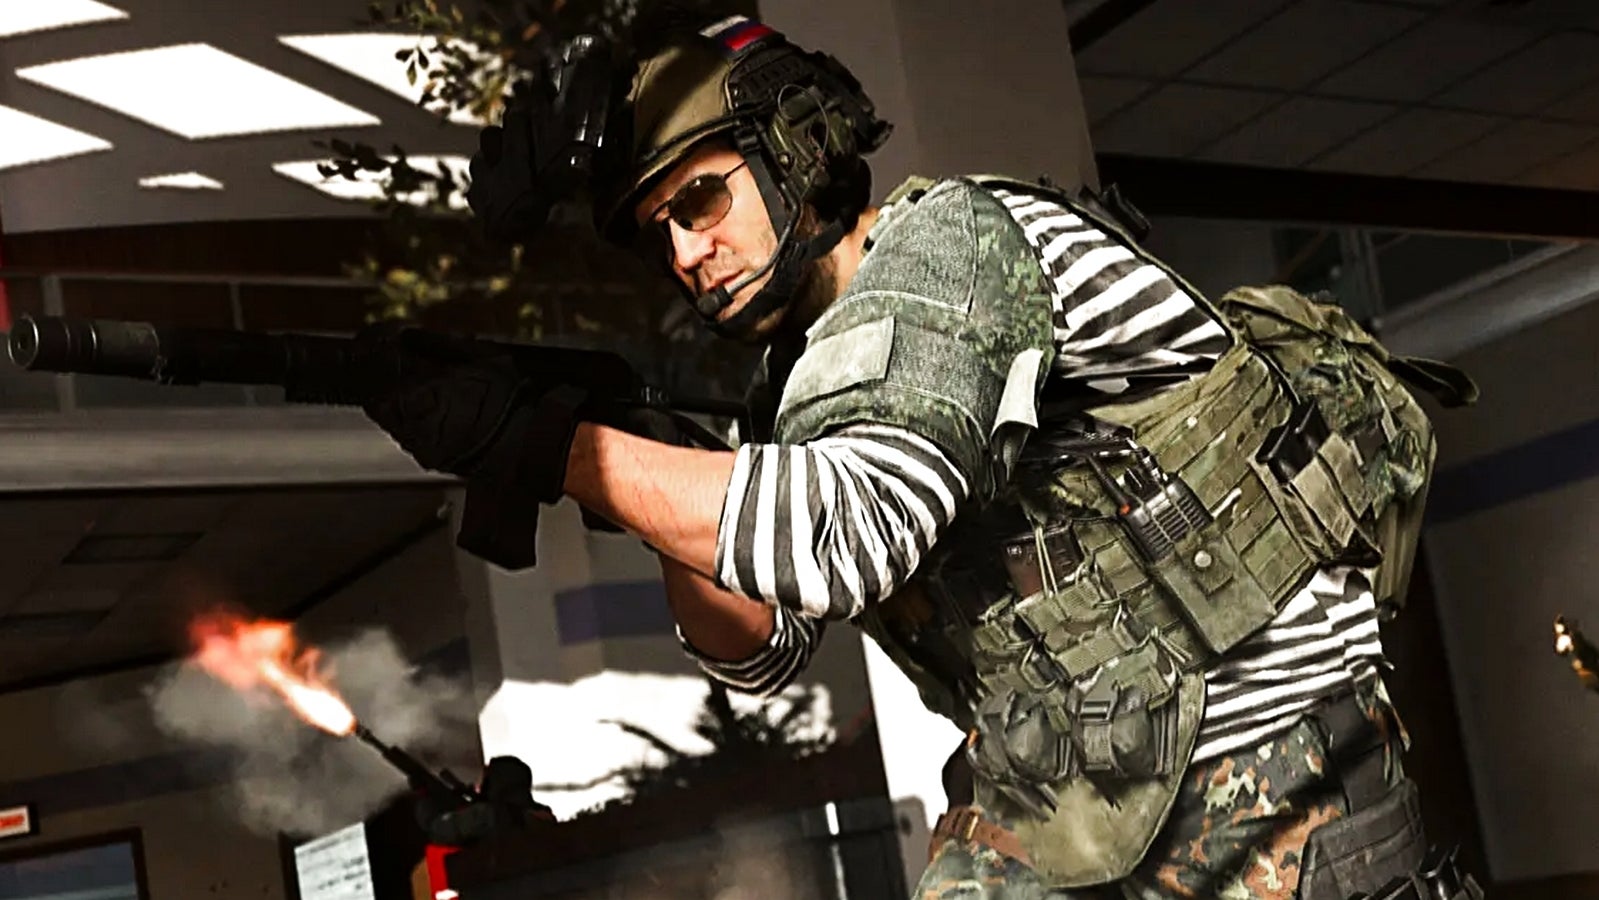 Bilder zu Call of Duty Modern Warfare: Survival Modus ab 1. Oktober 2020 auf Xbox One und PC verfügbar